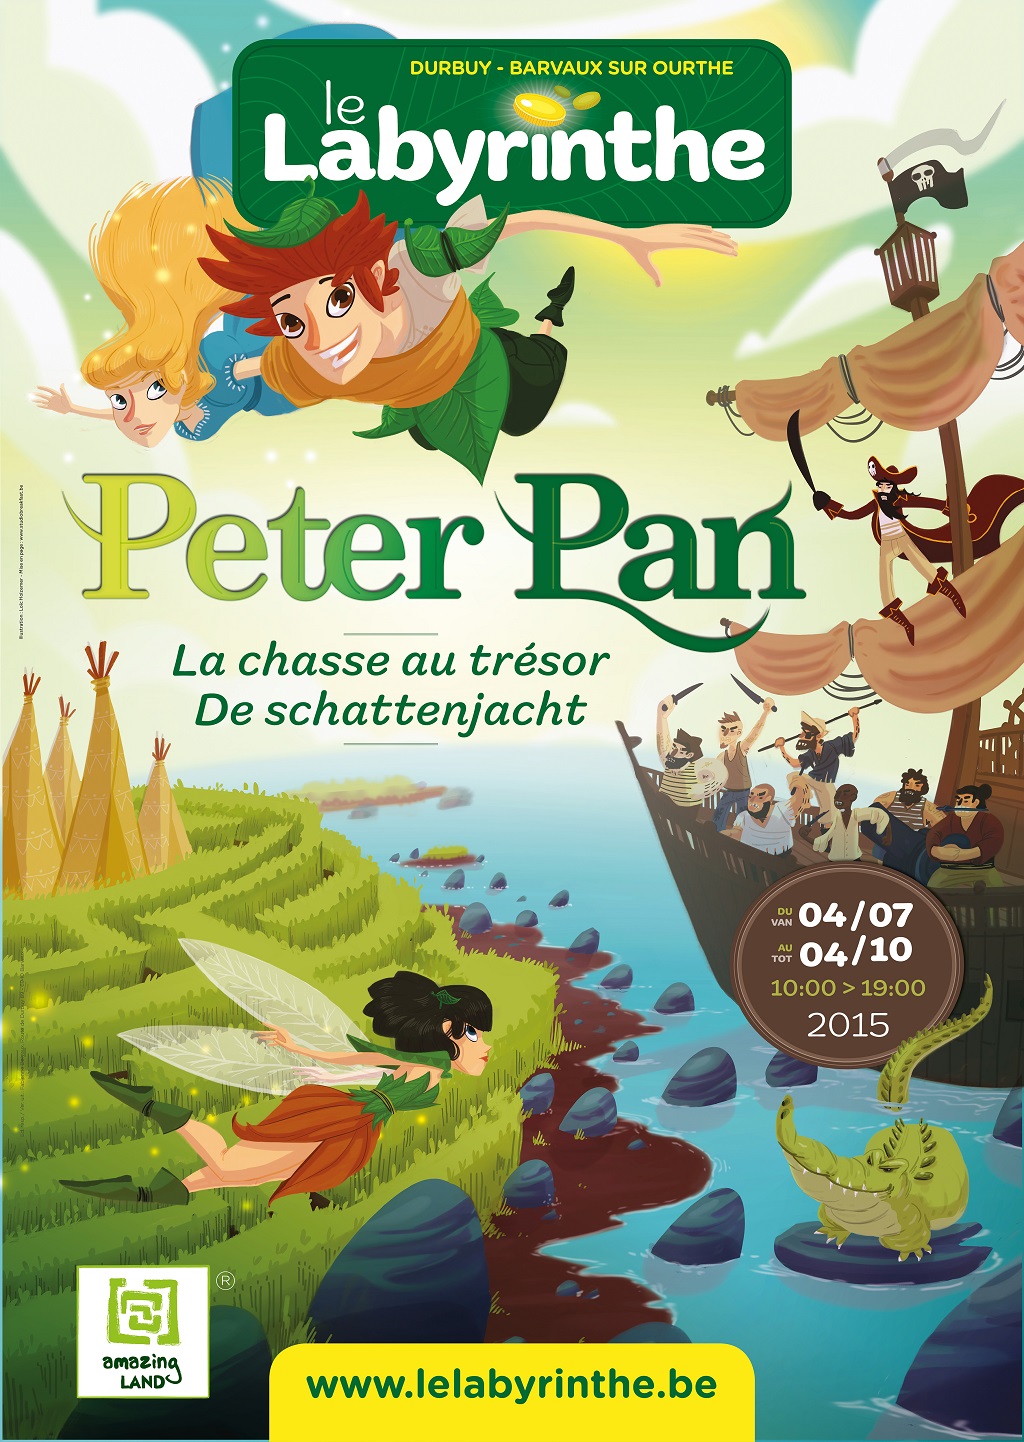 Barvaux :le labyrinthe accueille Peter Pan